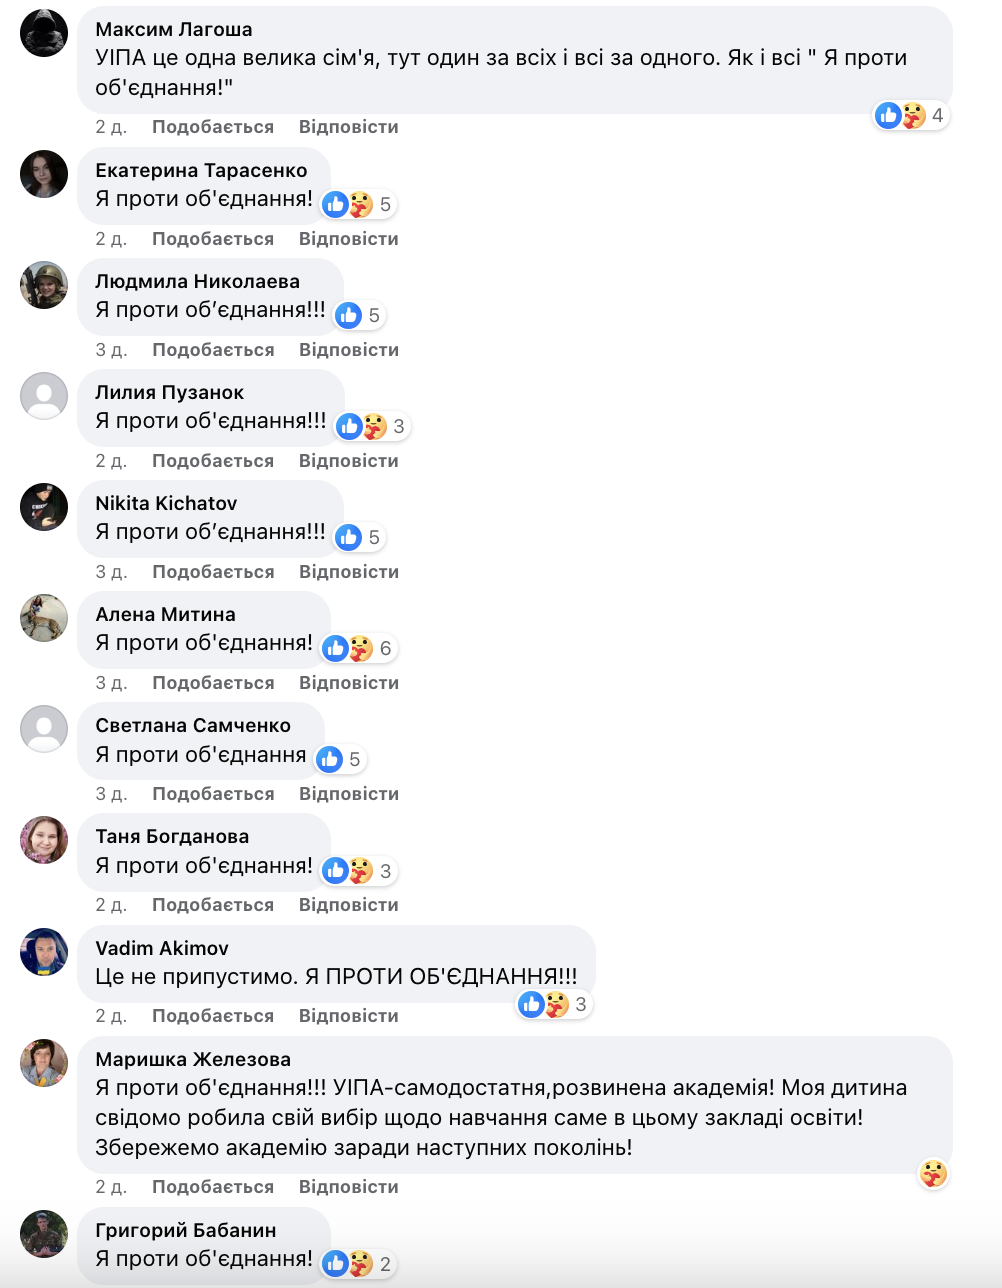 Не только университет имени Сковороды: к Каразину хотят присоединить еще один харьковский вуз, коллектив возмущен